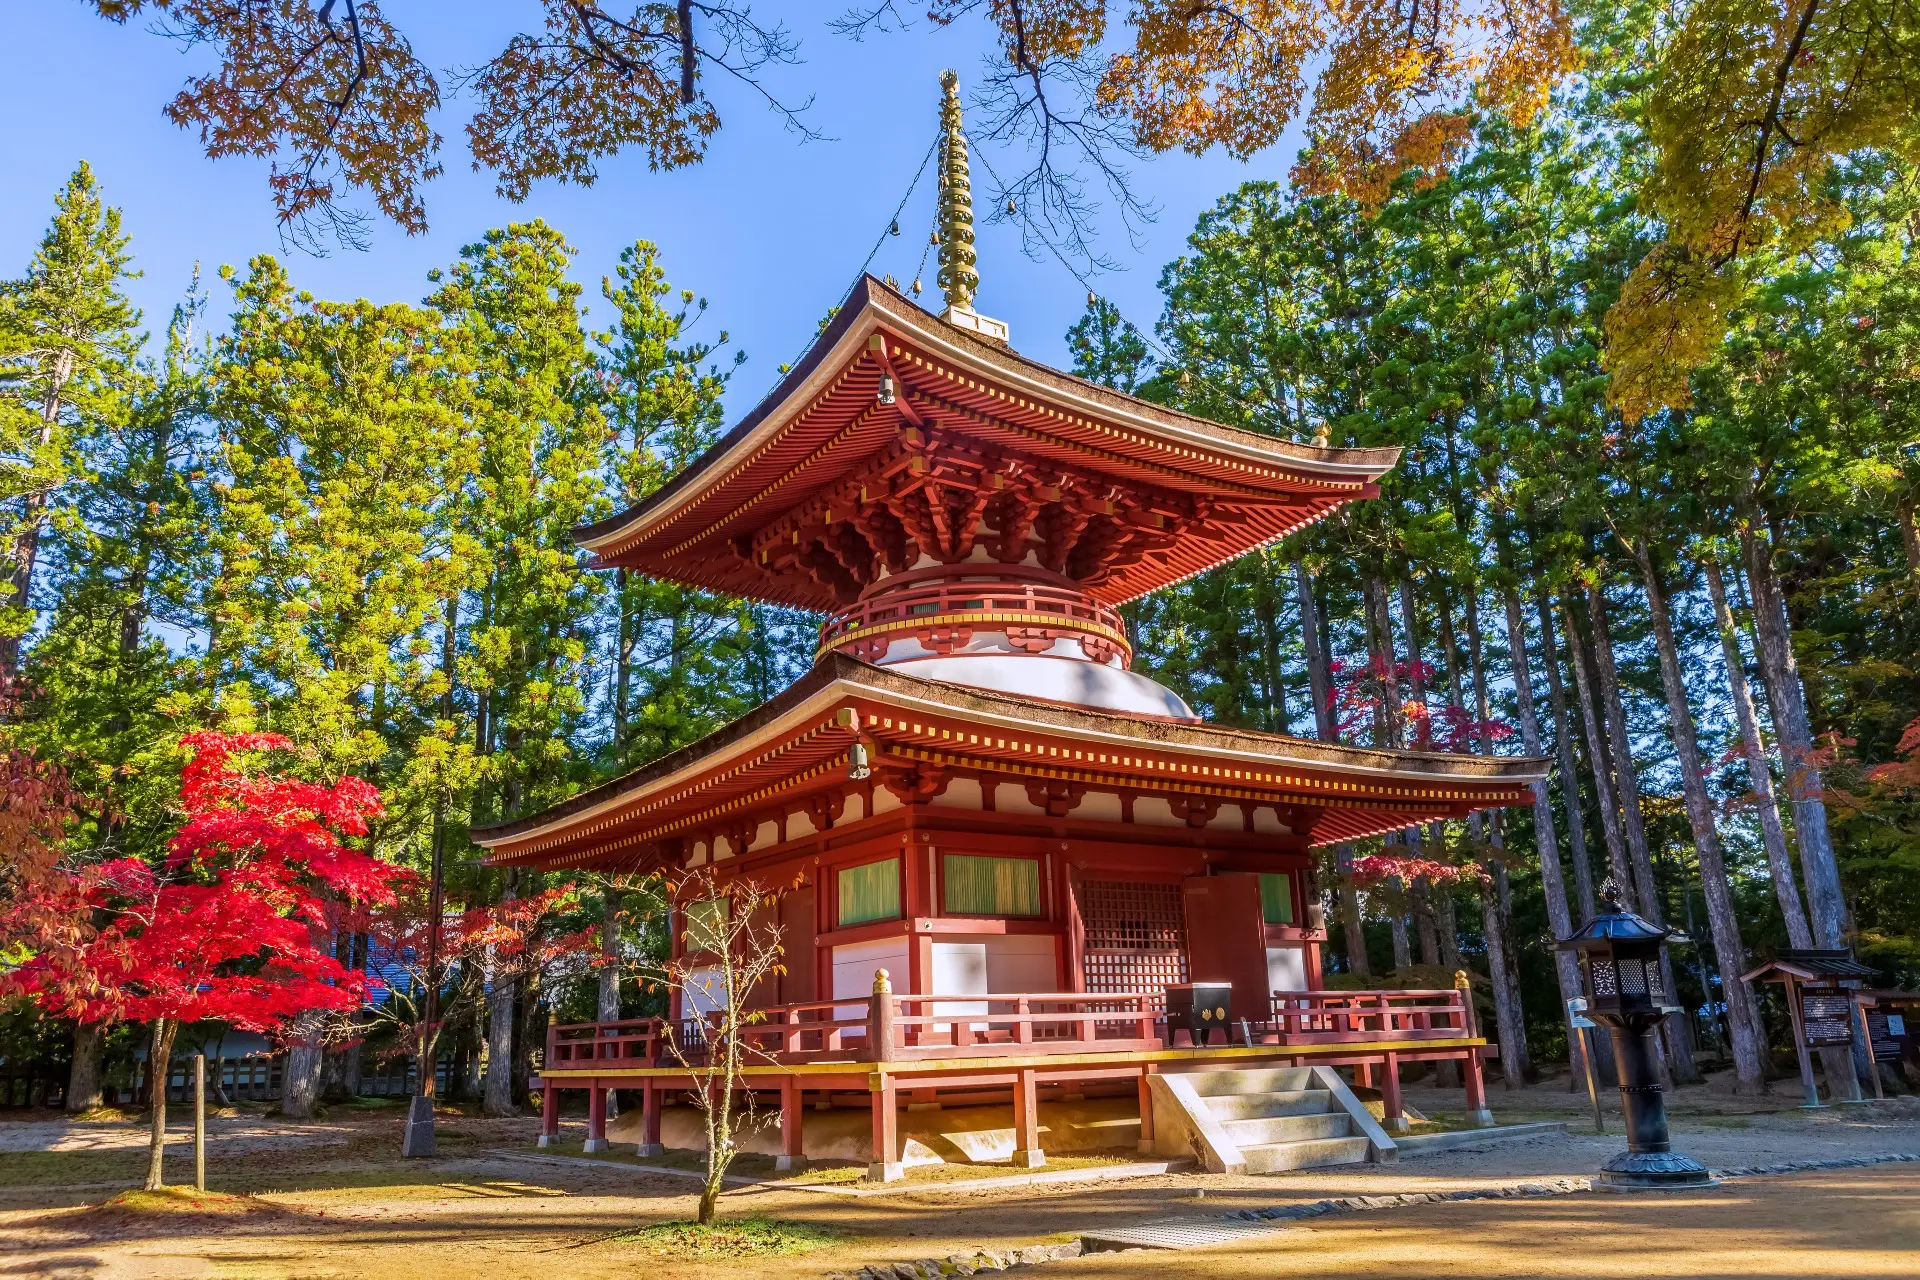 Une magnifique pagode rouge du Japon et son espace boisé alentour